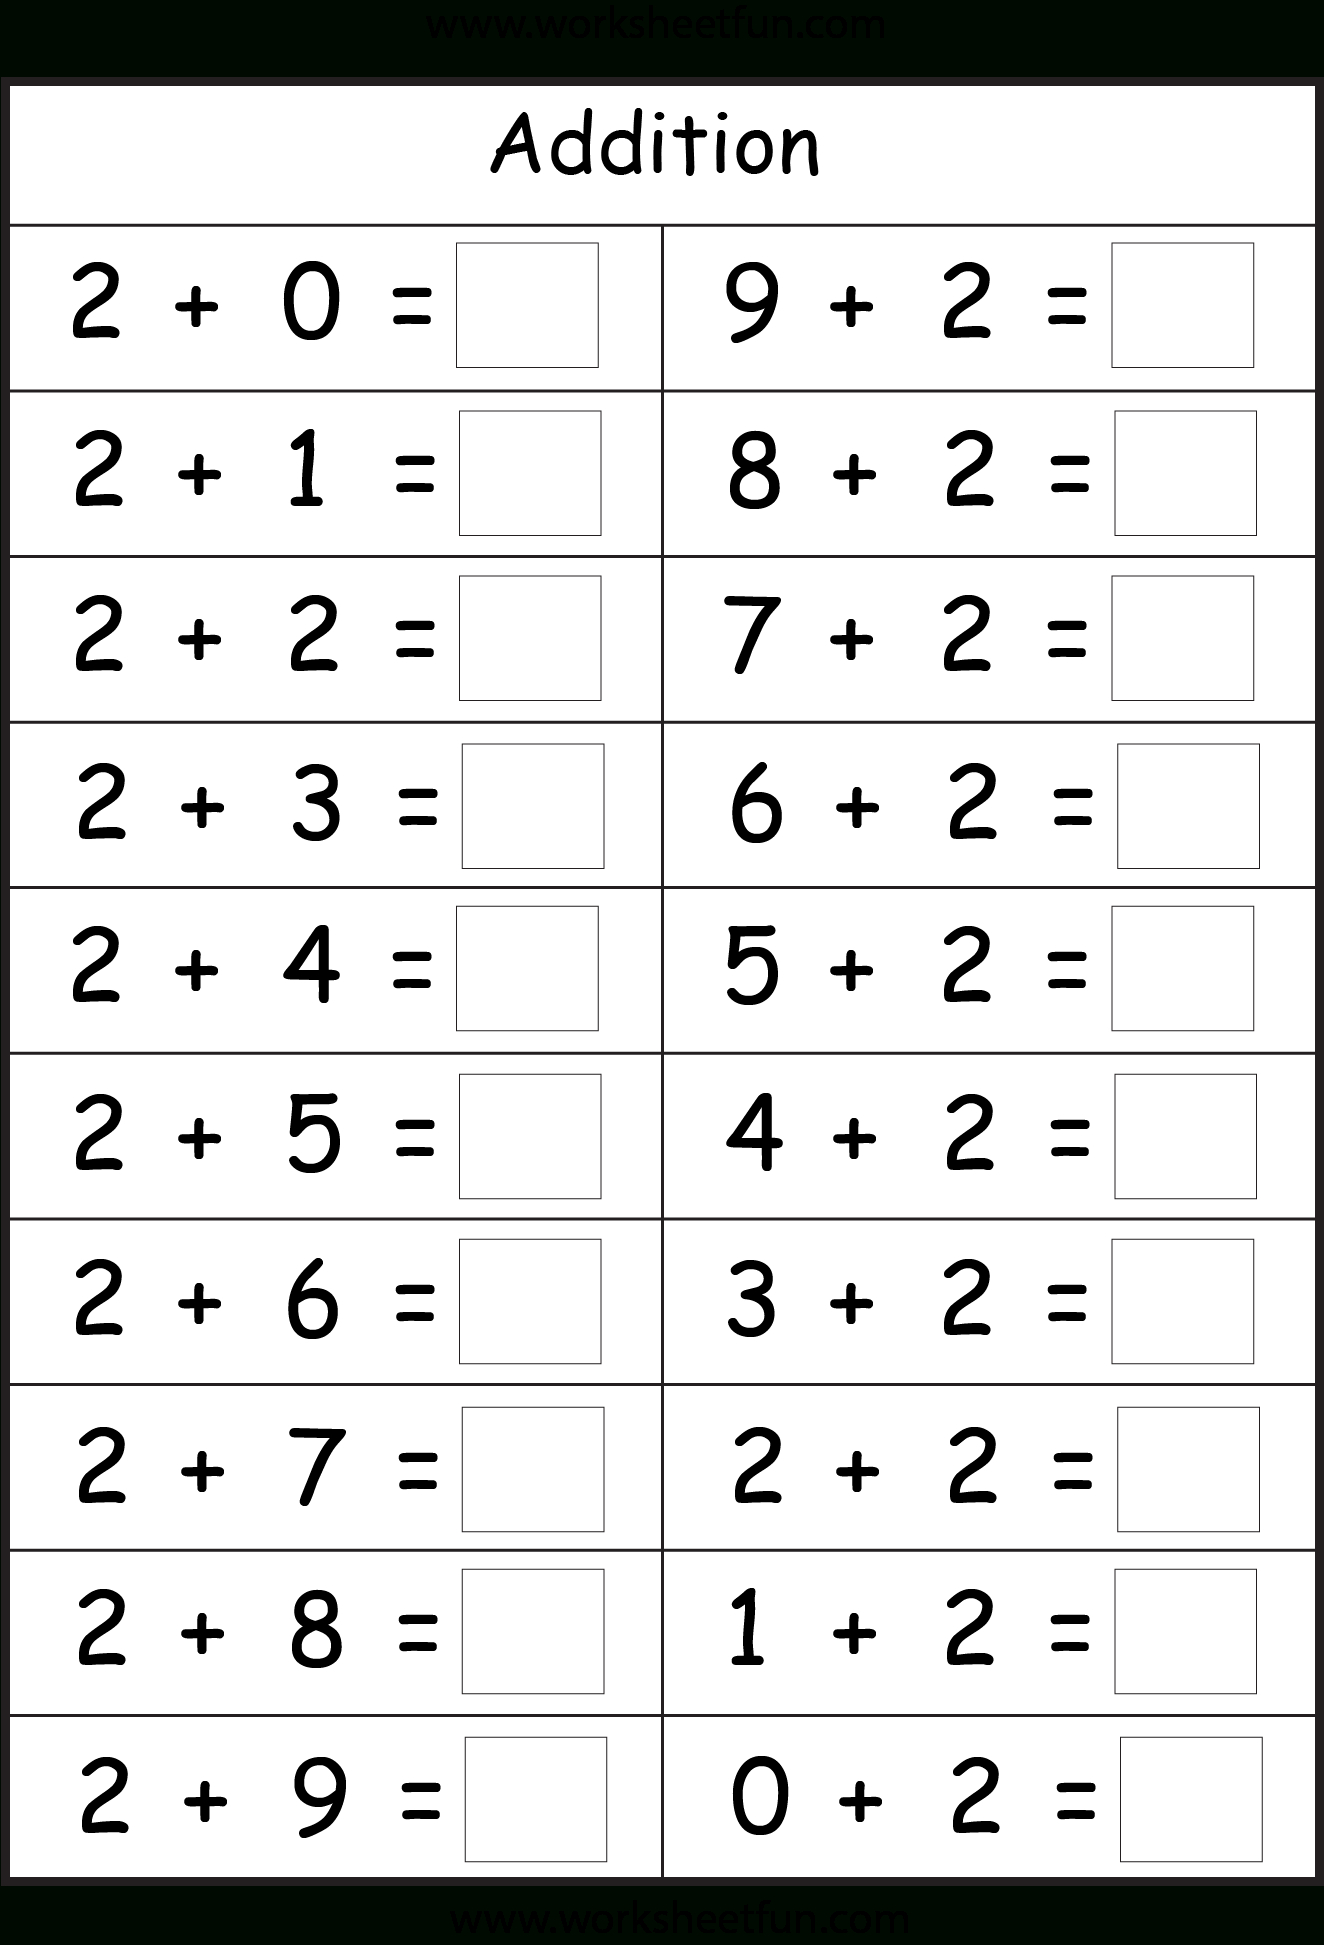 Addition Facts - 8 Worksheet | Printable Worksheets - Free Printable Math Addition Worksheets For Kindergarten